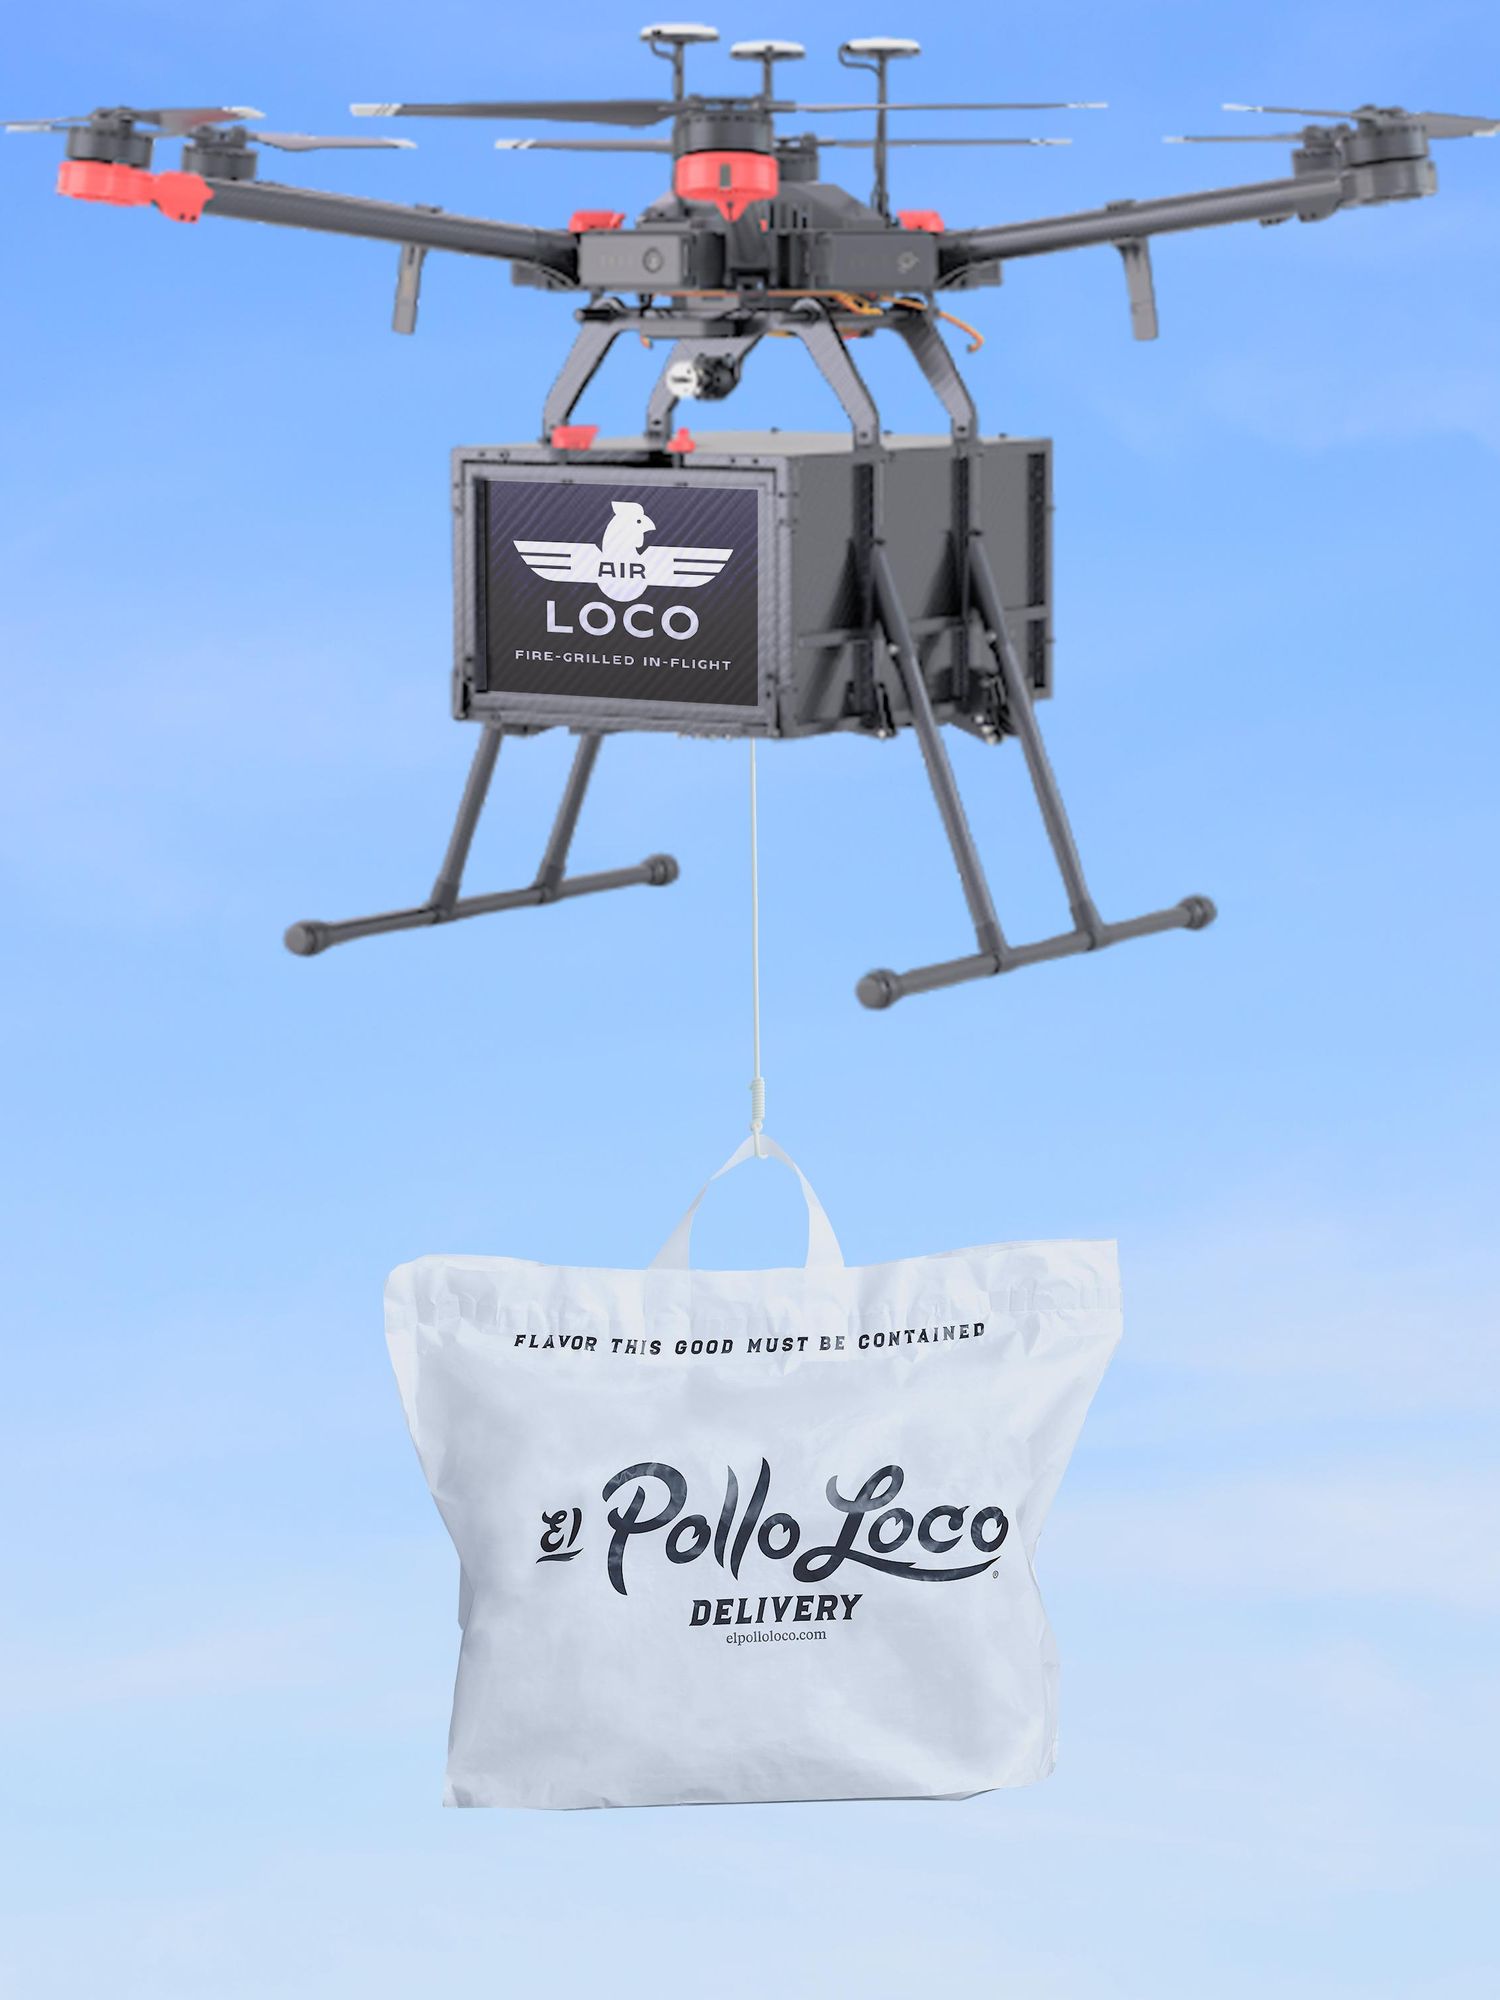 El Pollo Loco Will Airdrop Tacos With Its 'Air Loco' Drone Delivery Service